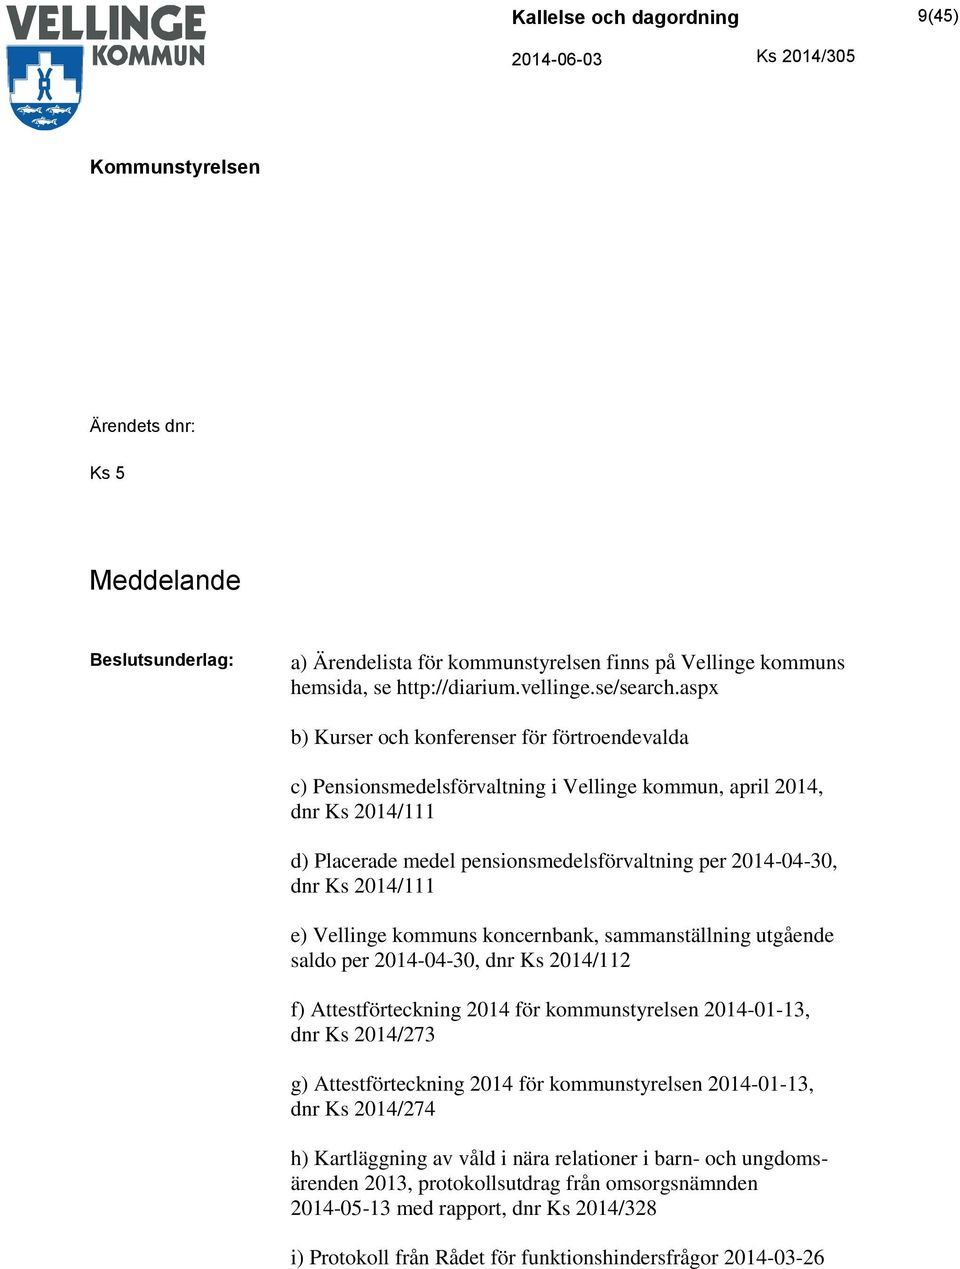 2014/111 e) Vellinge kommuns koncernbank, sammanställning utgående saldo per 2014-04-30, dnr Ks 2014/112 f) Attestförteckning 2014 för kommunstyrelsen 2014-01-13, dnr Ks 2014/273 g) Attestförteckning